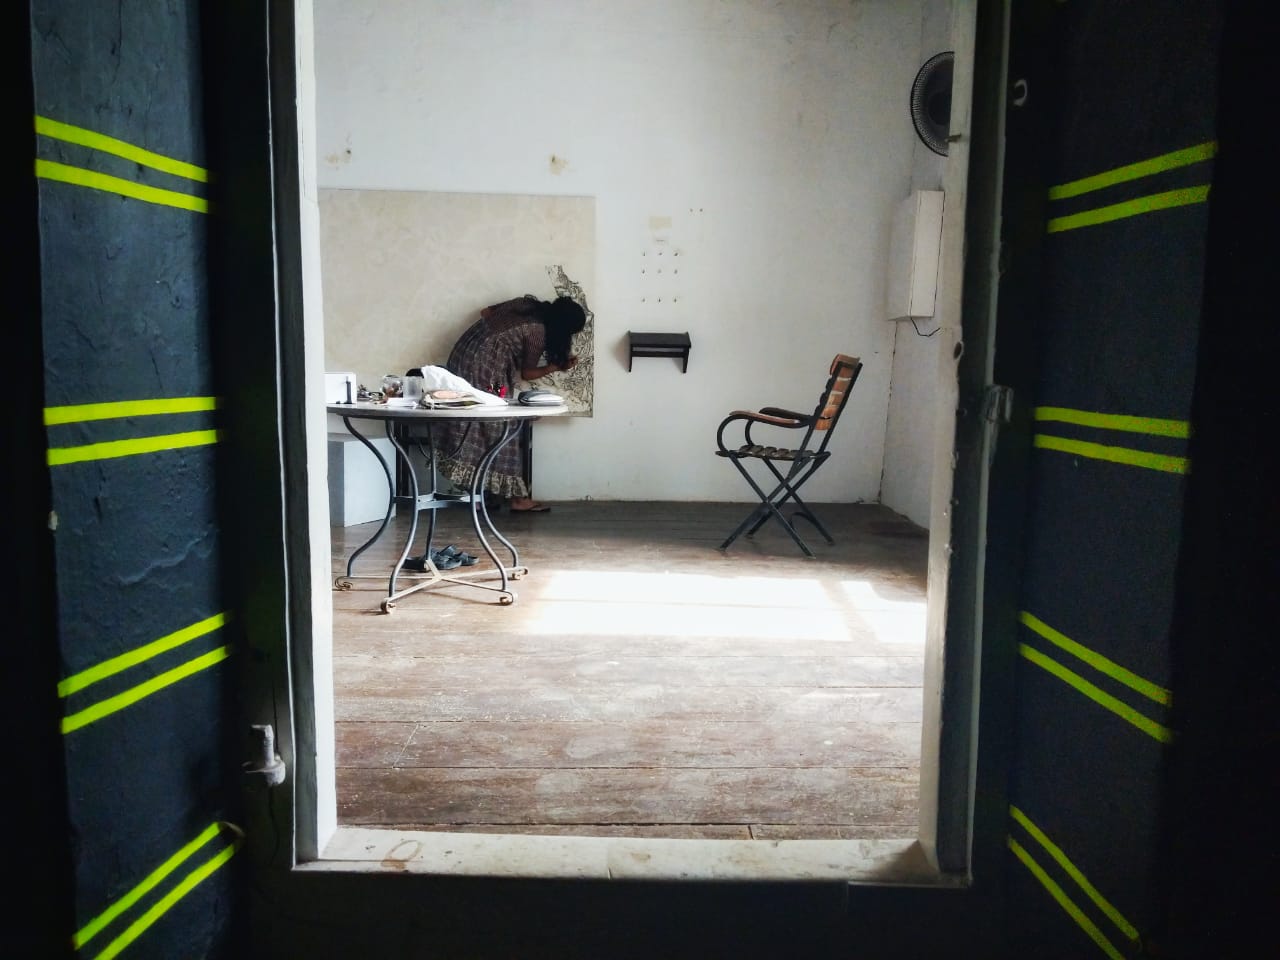 Kashi art residency, Kochi 2019